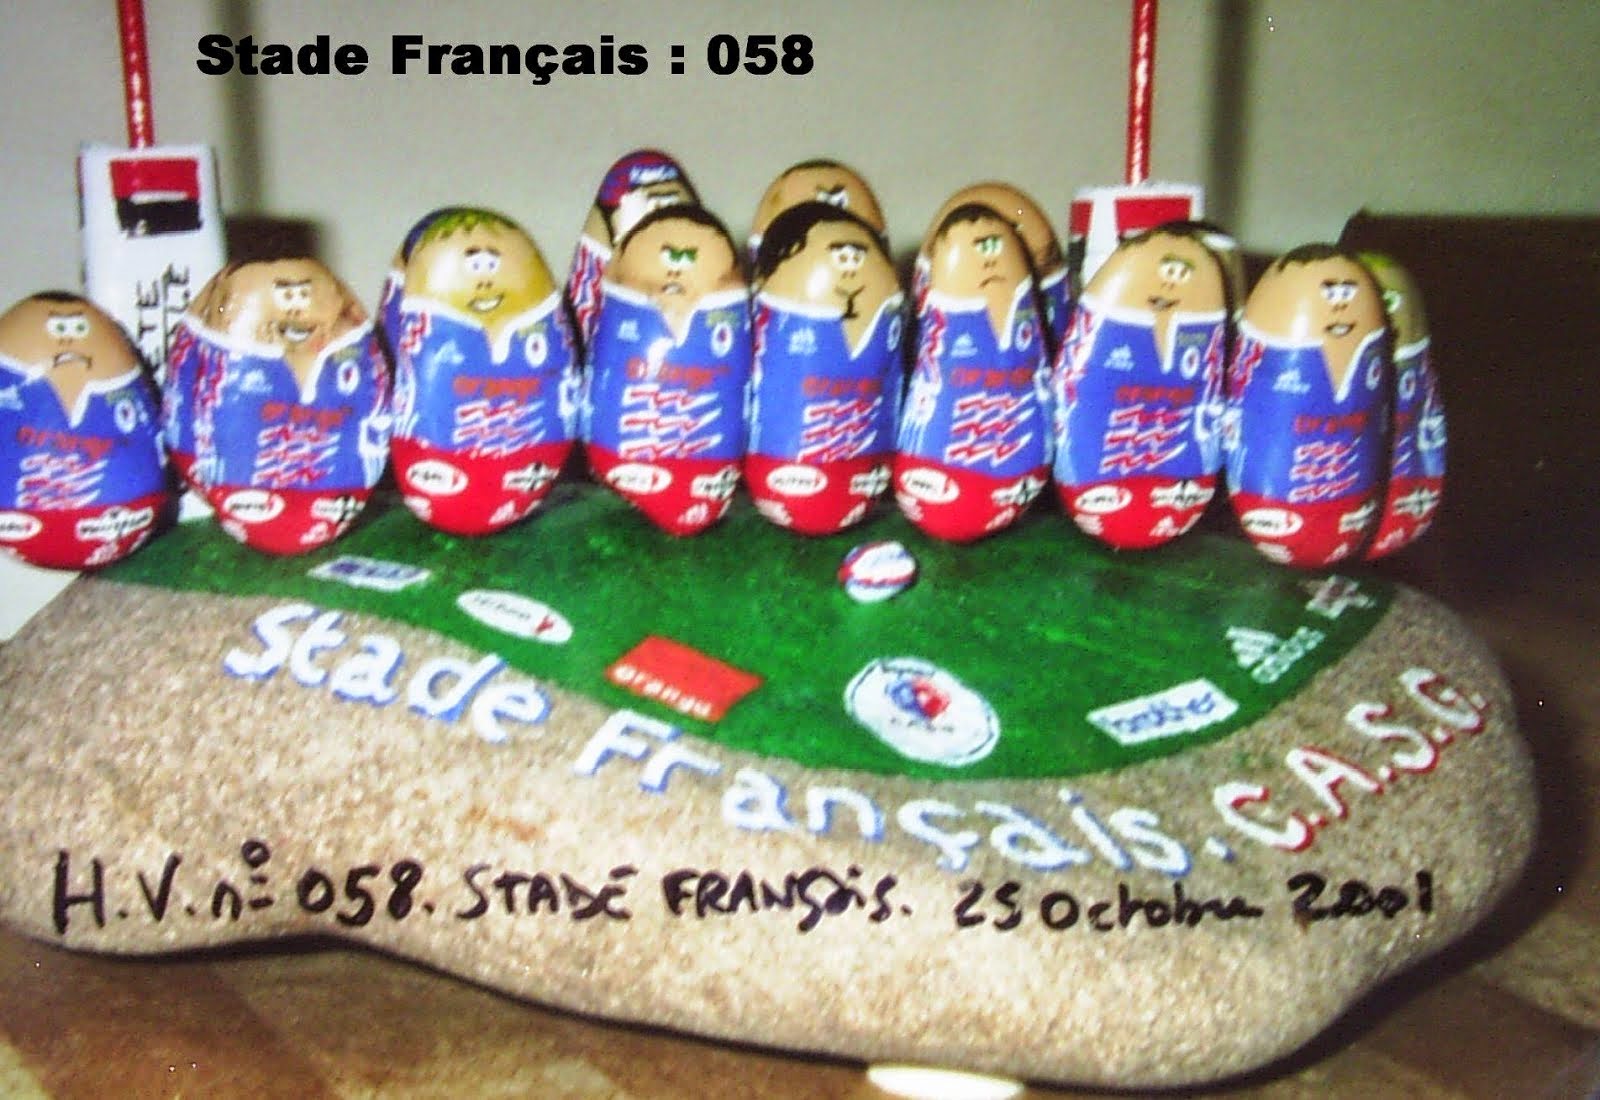 Stade Français en 2001